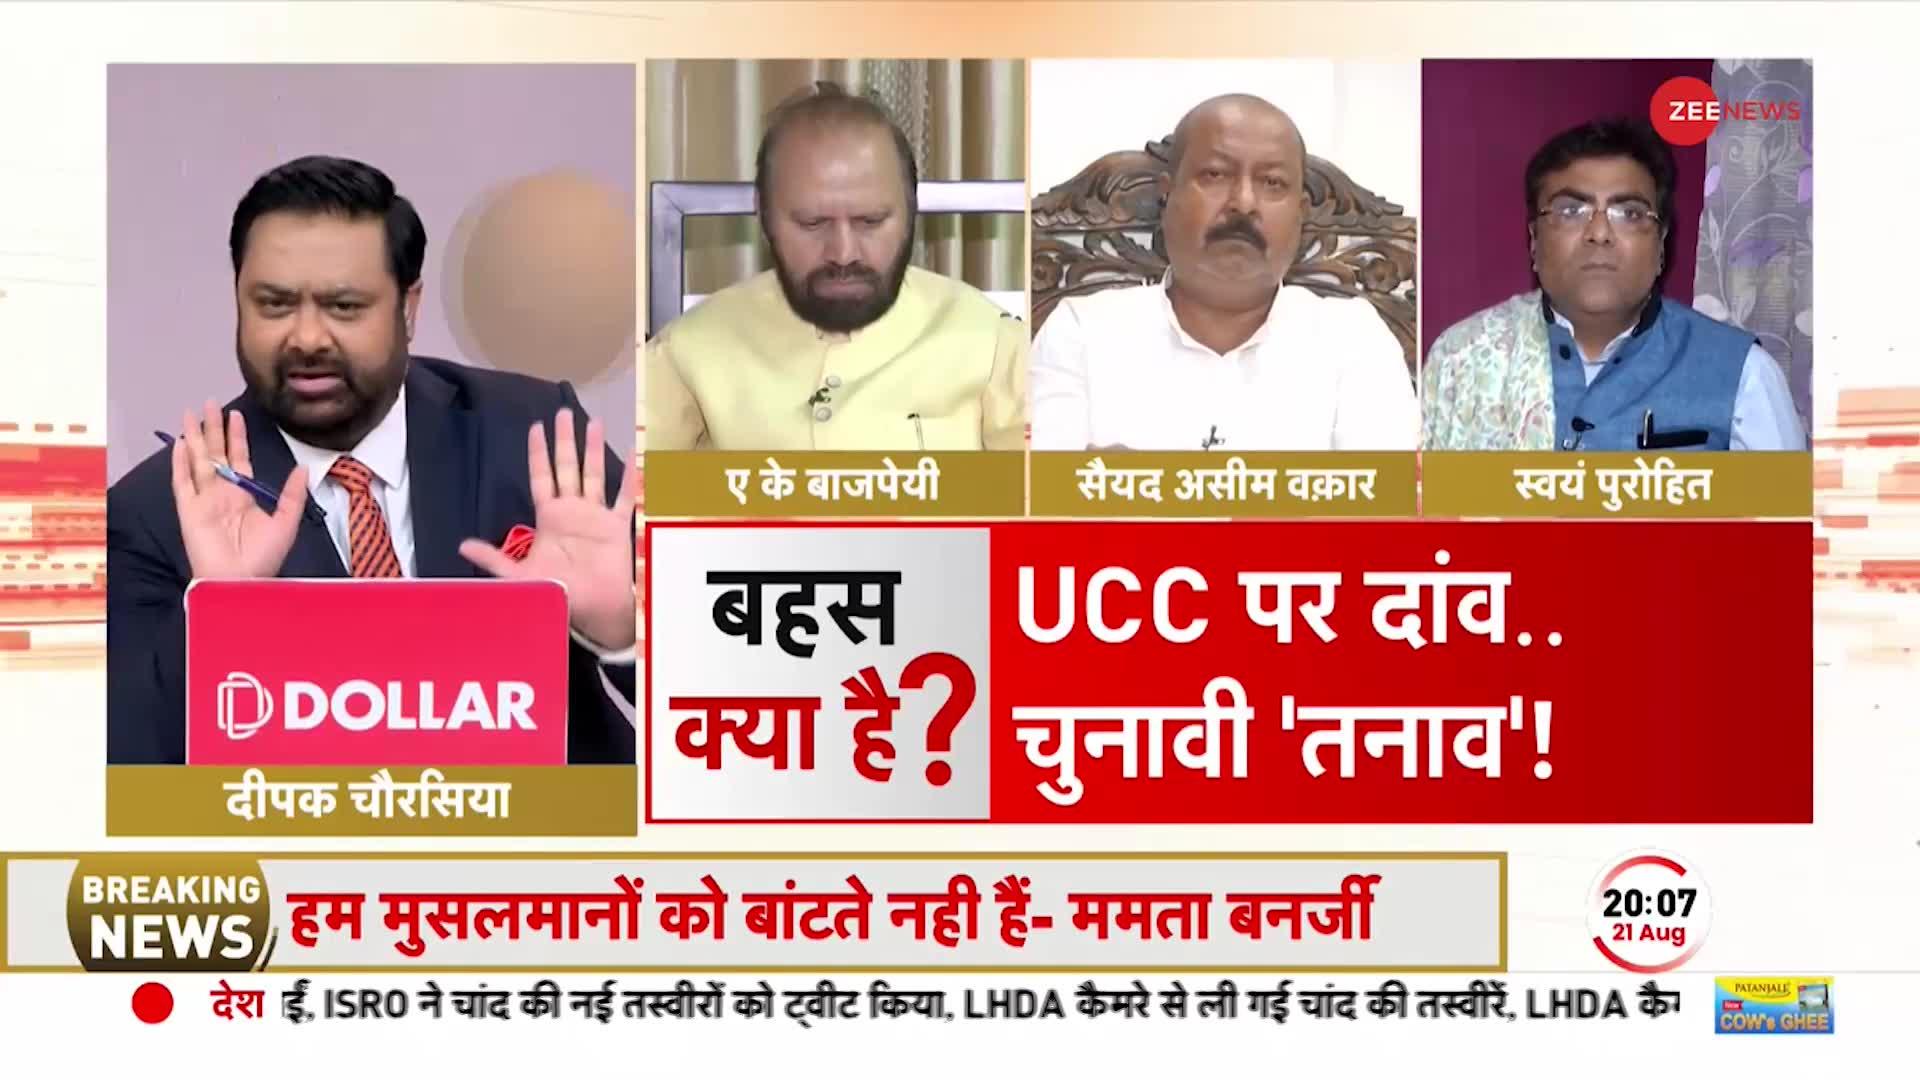 UCC: मुस्लिम वोट बैंक को खुश करने के लिए UCC पर ममता बनर्जी का ऐलान? TMC प्रवक्ता को सुनिए